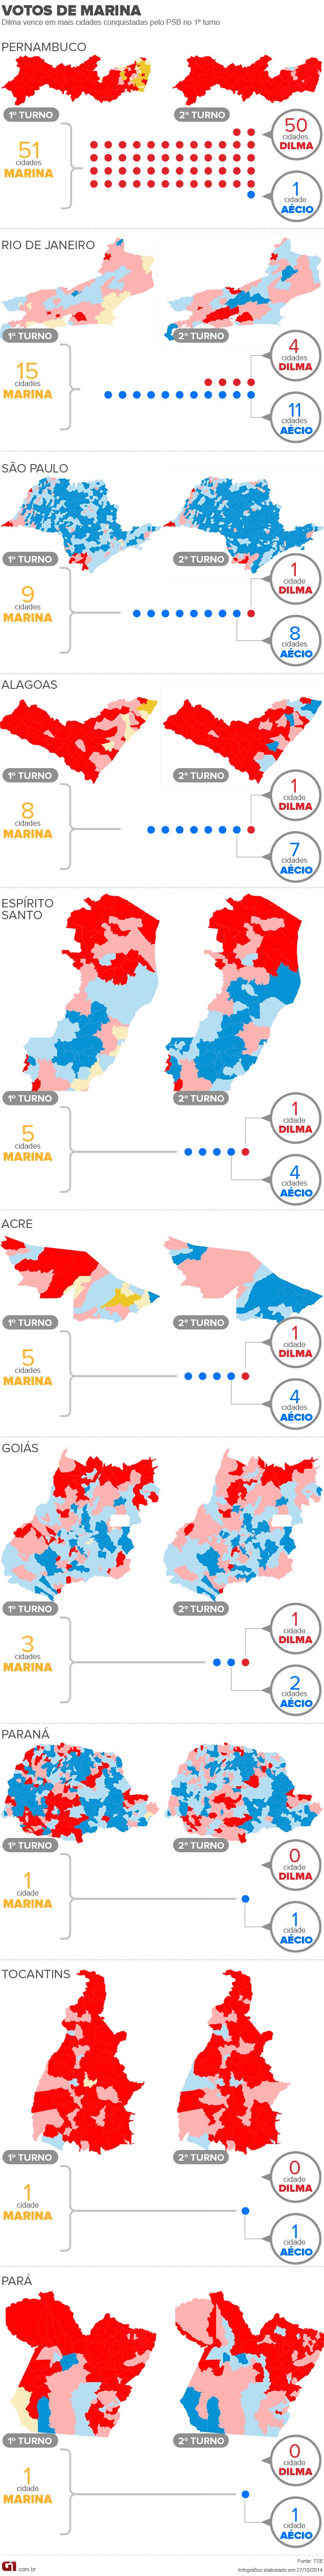 mapa votos marina